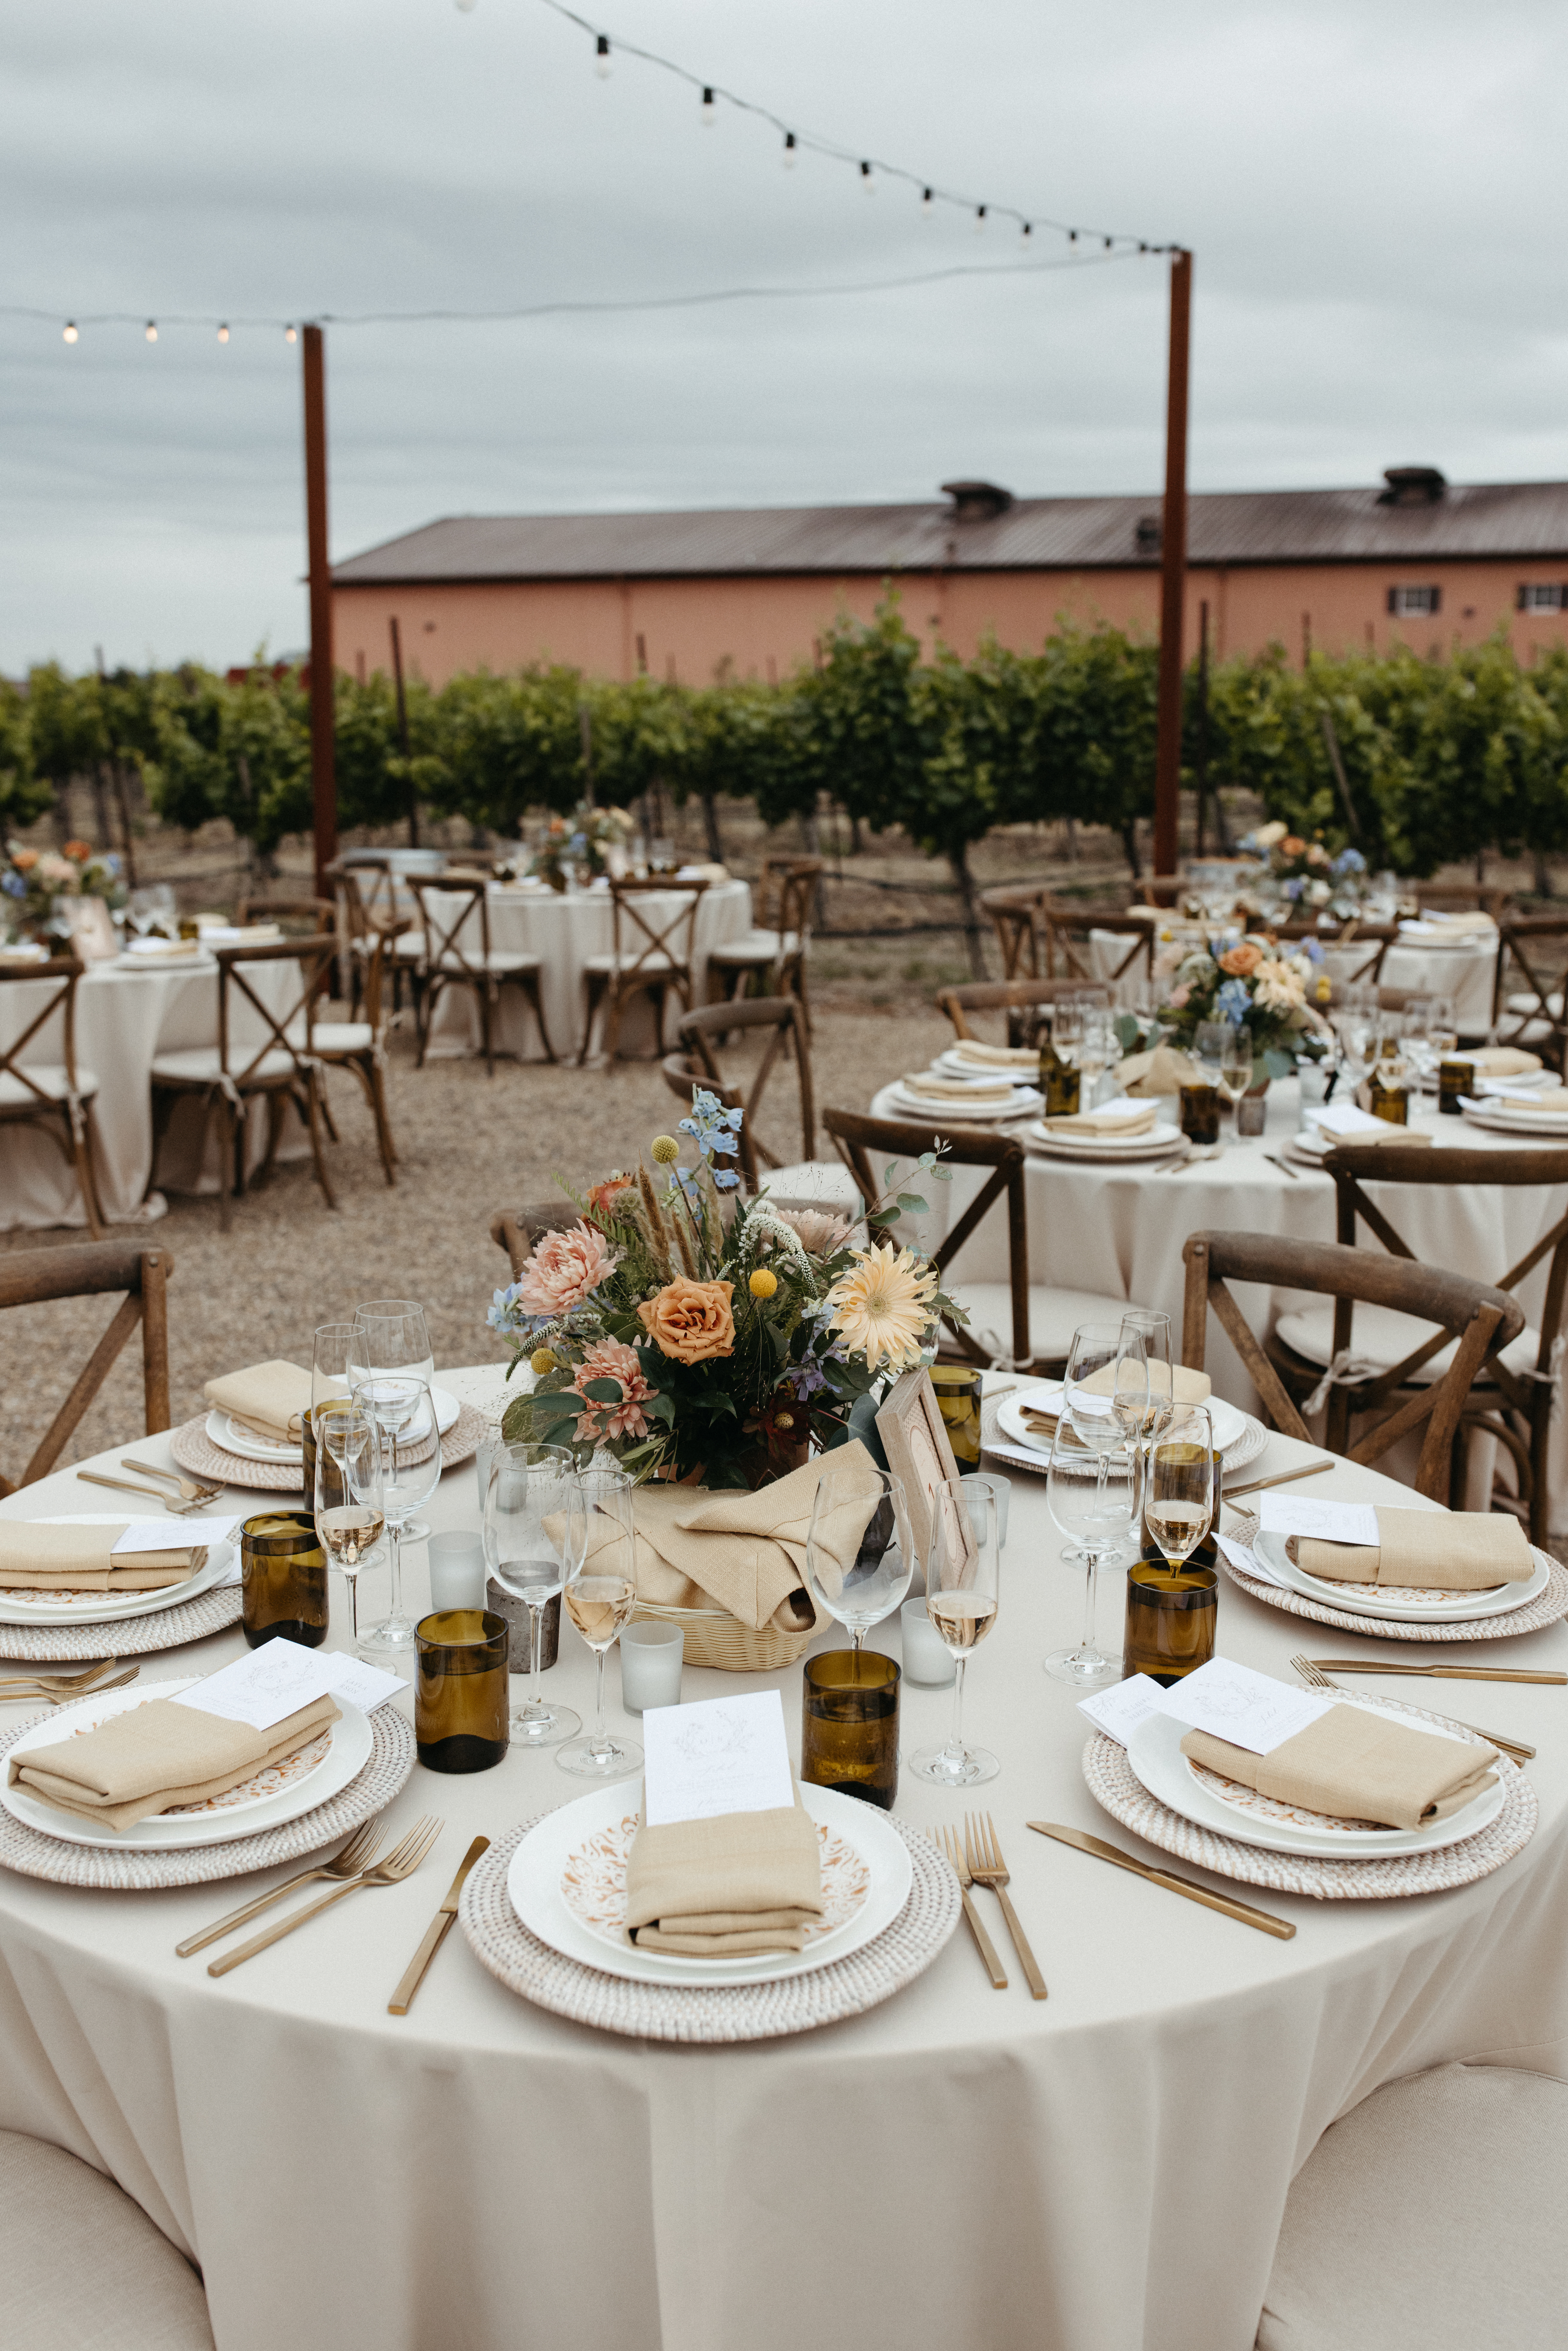 Nếu bạn đang tìm kiếm một địa điểm hoàn hảo để tổ chức đám cưới trong mơ của mình, Pellegrini Wine Company tại Russian River Valley chính là sự lựa chọn hoàn hảo. Không gian tuyệt đẹp, dịch vụ tuyệt vời và không gian vườn nho thơ mộng sẽ mang đến một đám cưới vô cùng đẹp và ấn tượng.